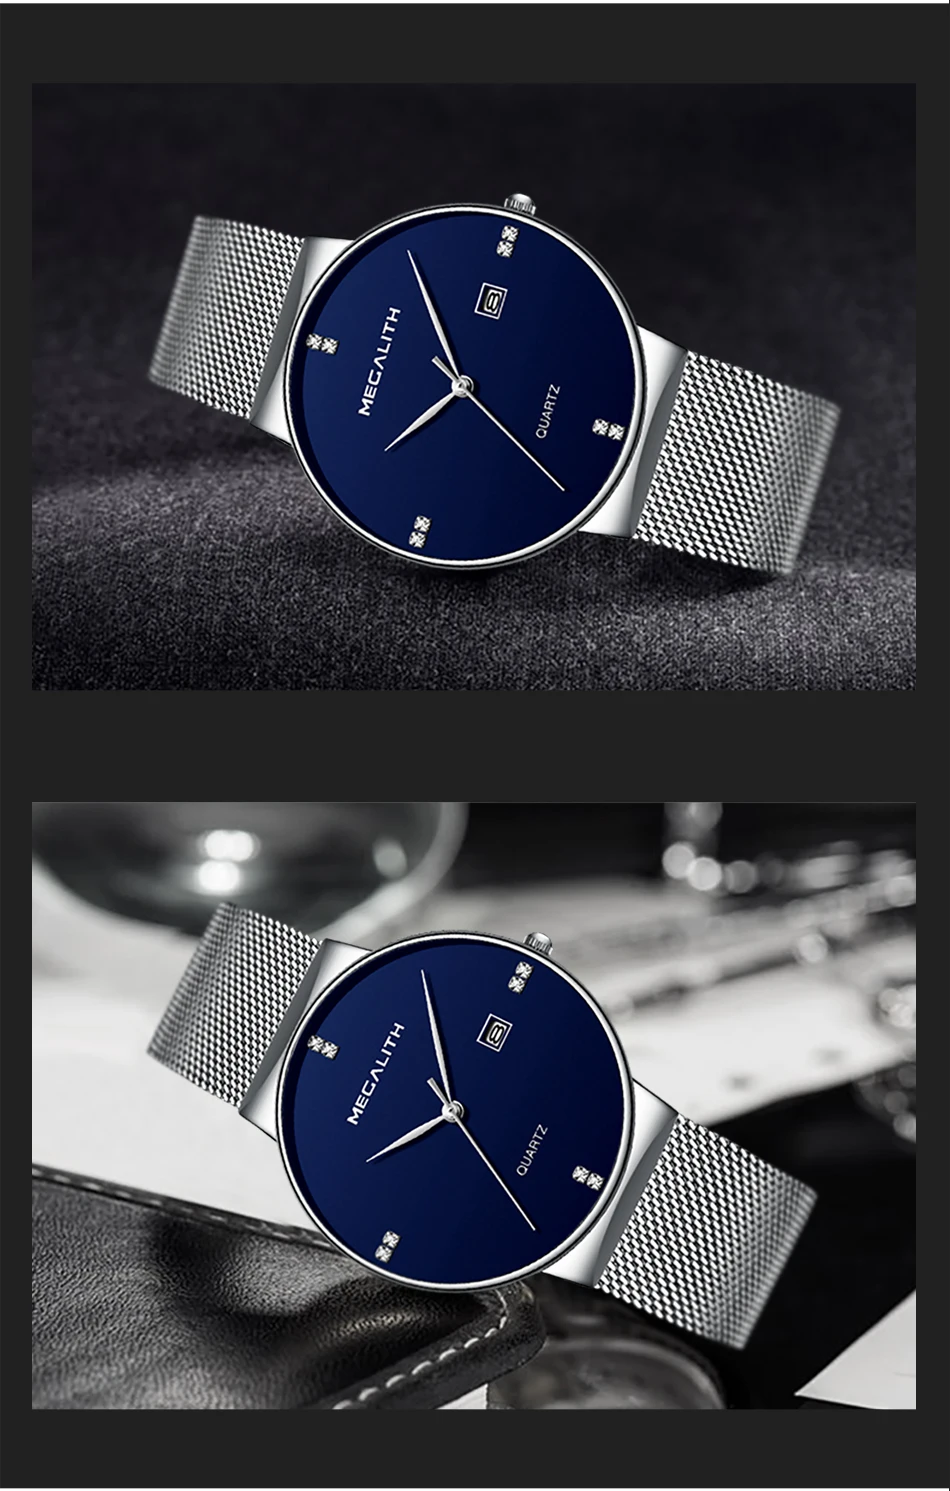 MEGALITH Бредовые кварцевые наручные мужские часы с ультратонким корпусом лаконичного дизайна, с датой на циферблате. Водонепроницаемые